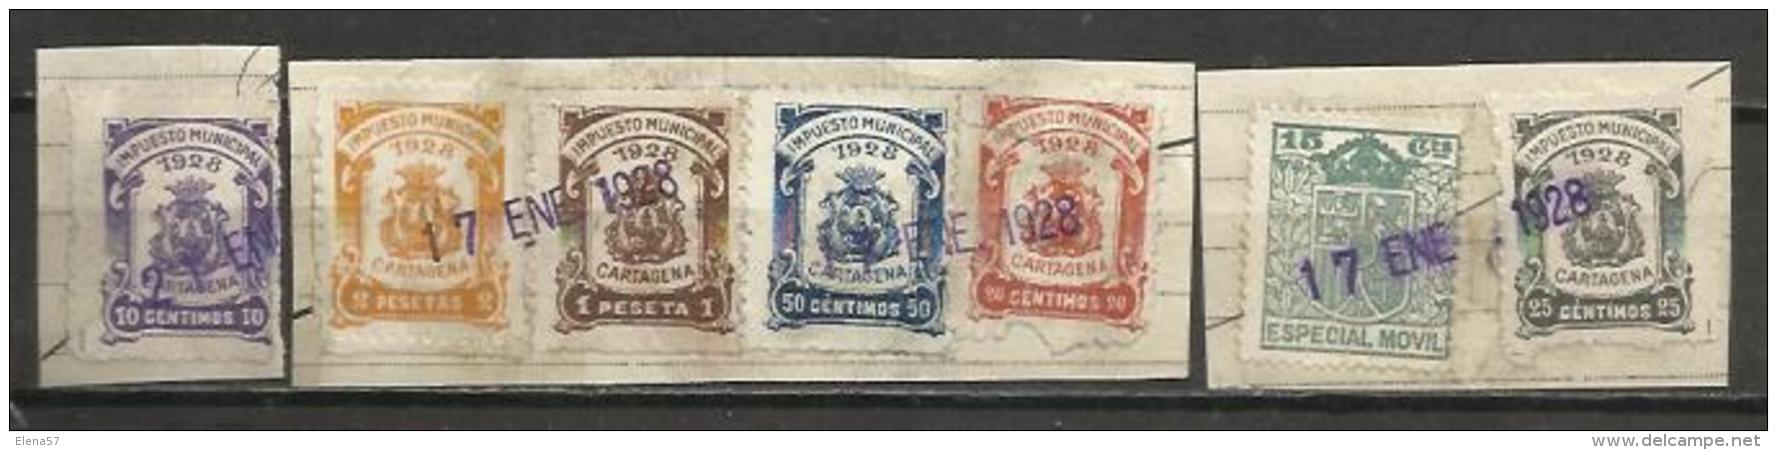 4142- LOTE COLECCION SELLOS LOCALES FISCALES CARTAGENA 1928 NO CATALOGADOS,ALTO VALOR Y SOBRE FRAGMENTO ORIGINAL. 4142 - - Revenue Stamps